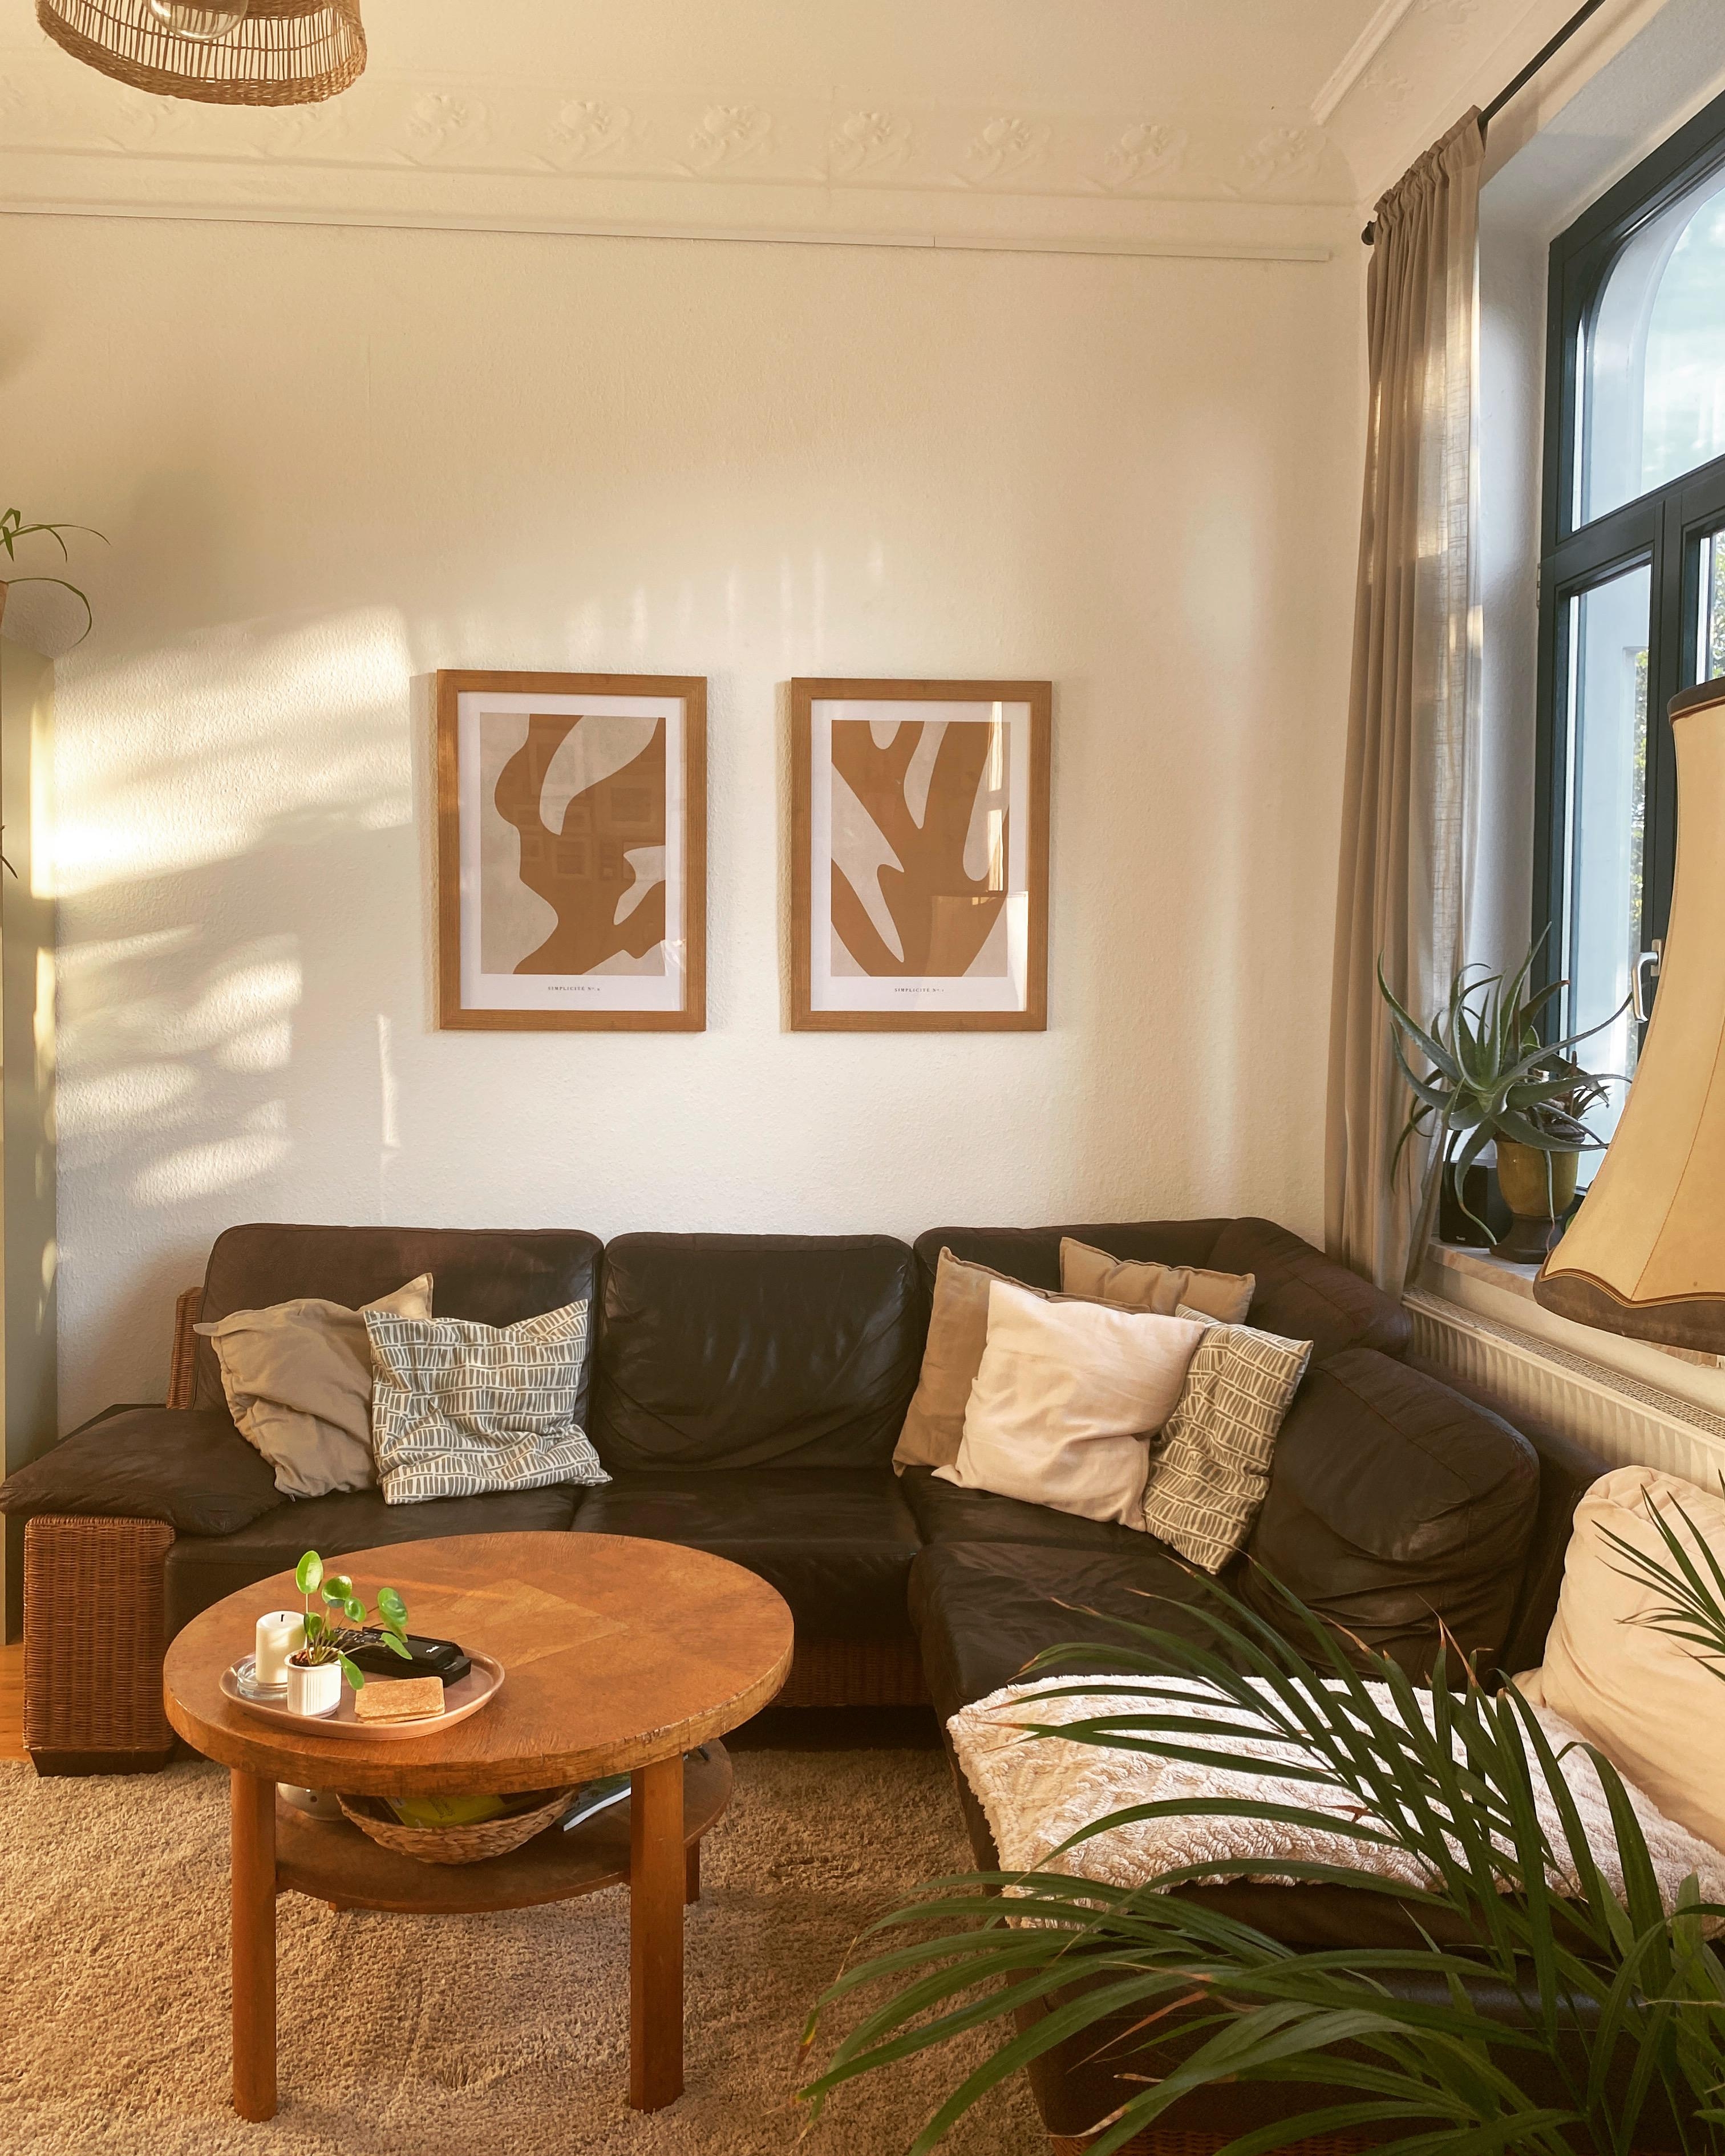 Boho-Wohnzimmer 🧡
#wohnzimmer #boho #rattan #leinenvorhang #vintage #coffeetable #cozy